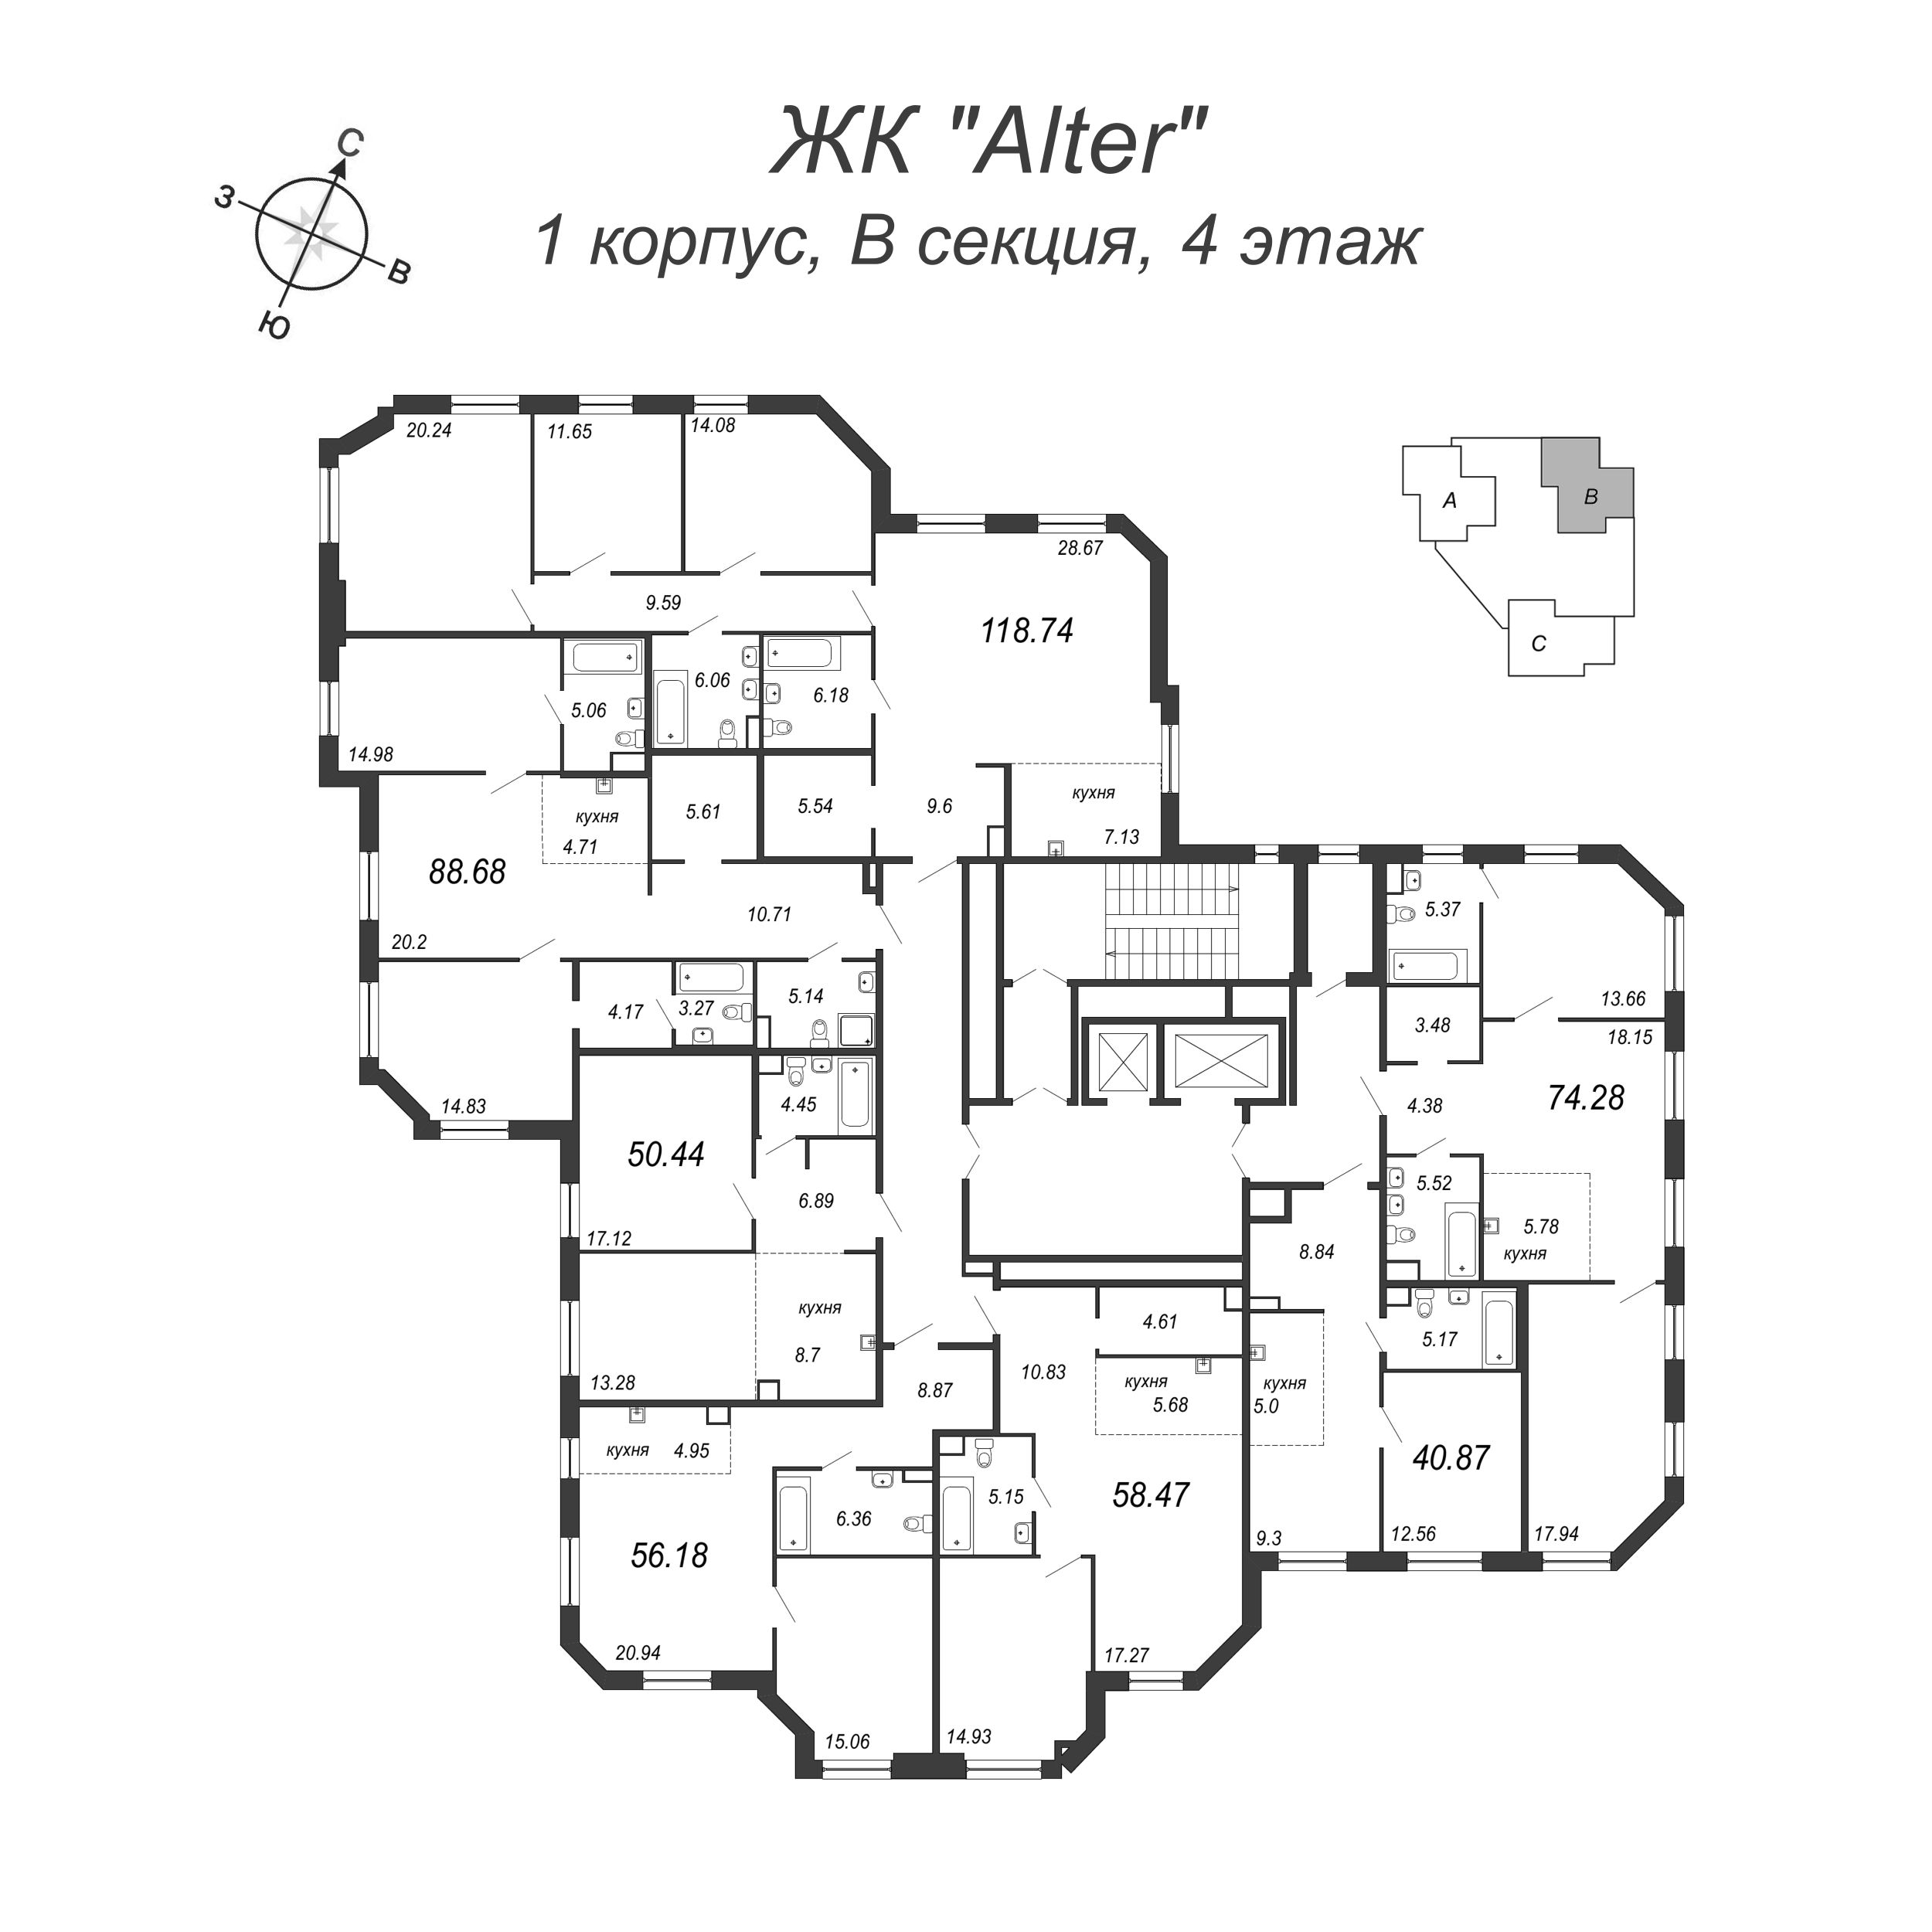 2-комнатная (Евро) квартира, 59.2 м² в ЖК "Alter" - планировка этажа